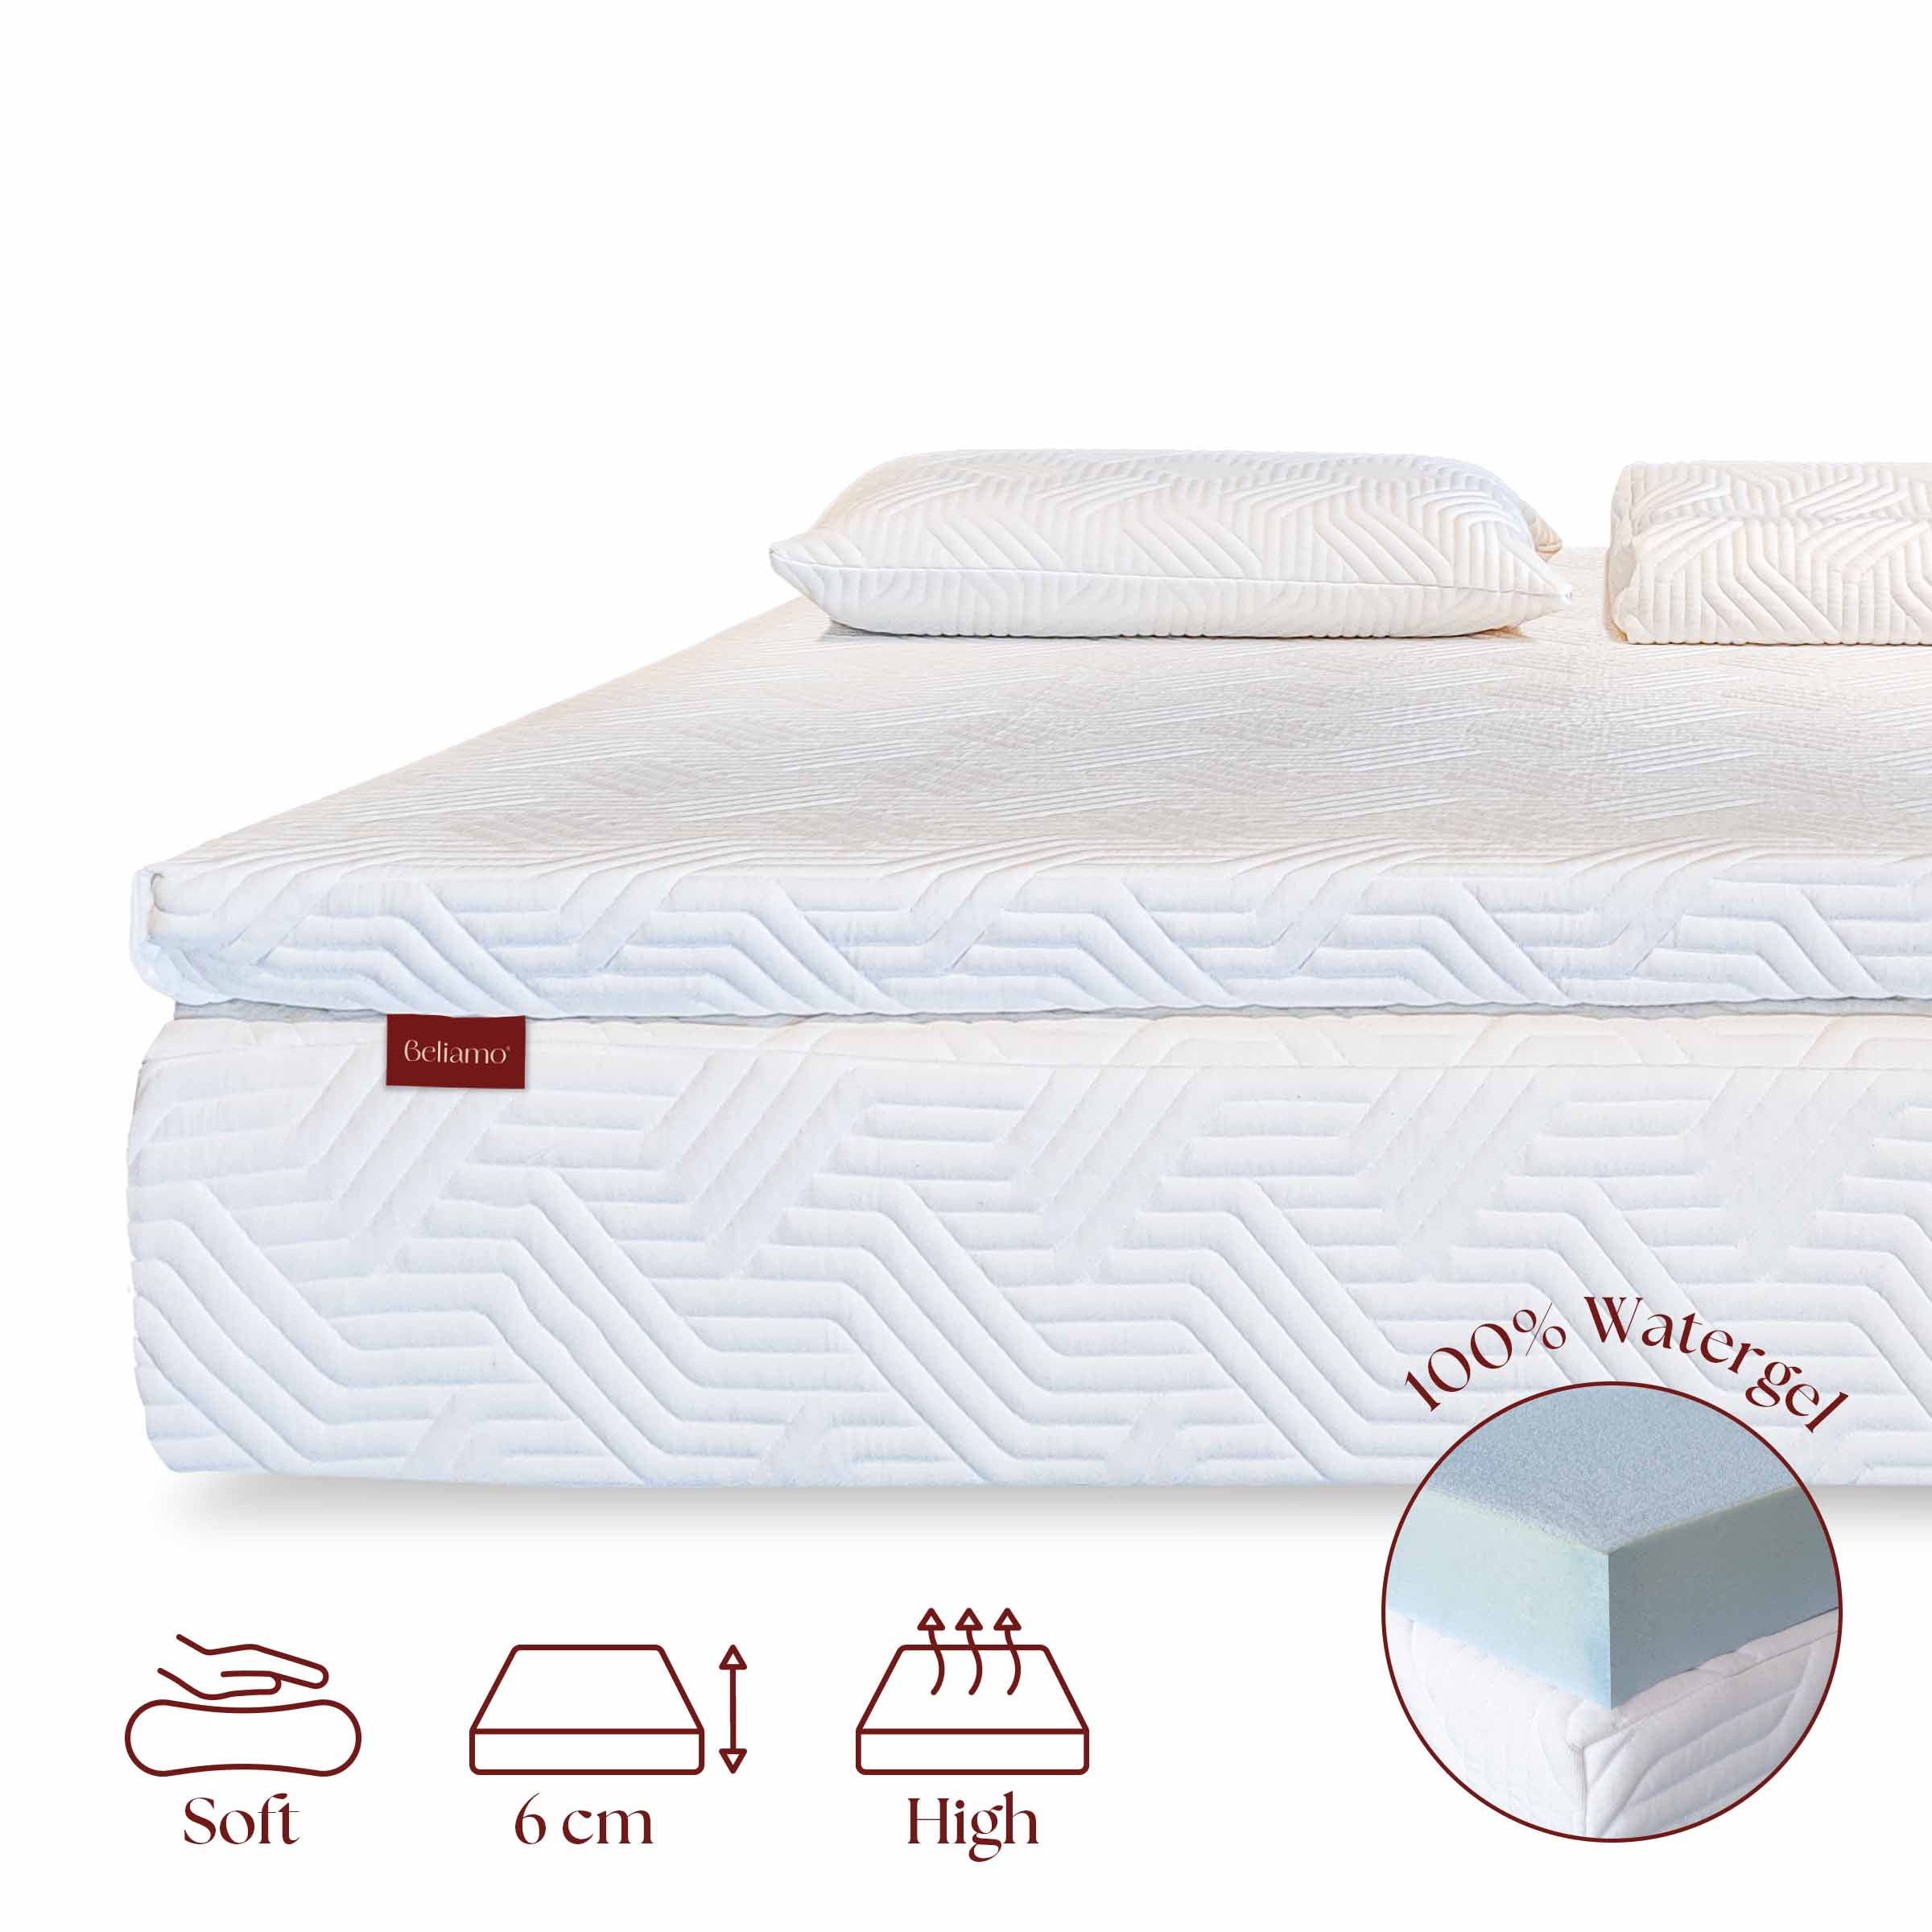 Topper Bellini in Watergel di Beliamo, progettato per aggiungere comfort e supporto al materasso, migliorando la qualità del sonno con materiali traspiranti e ergonomici.